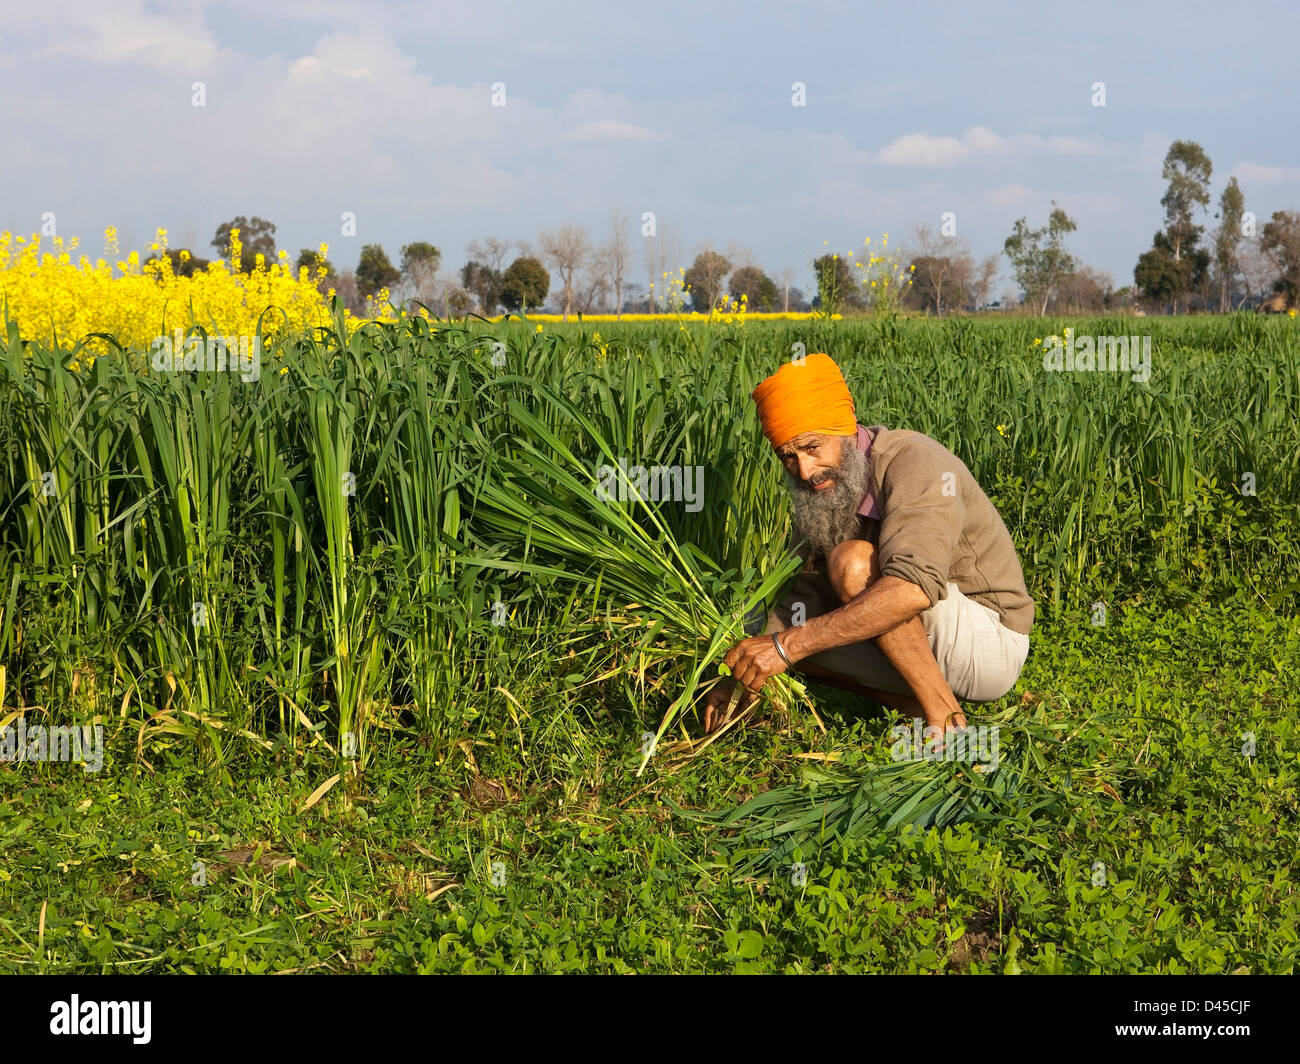 Un hombre sij vestidos tradicionalmente cultivos forrajeros de corte a mano agrícola en el estado de Punjab India Foto de stock